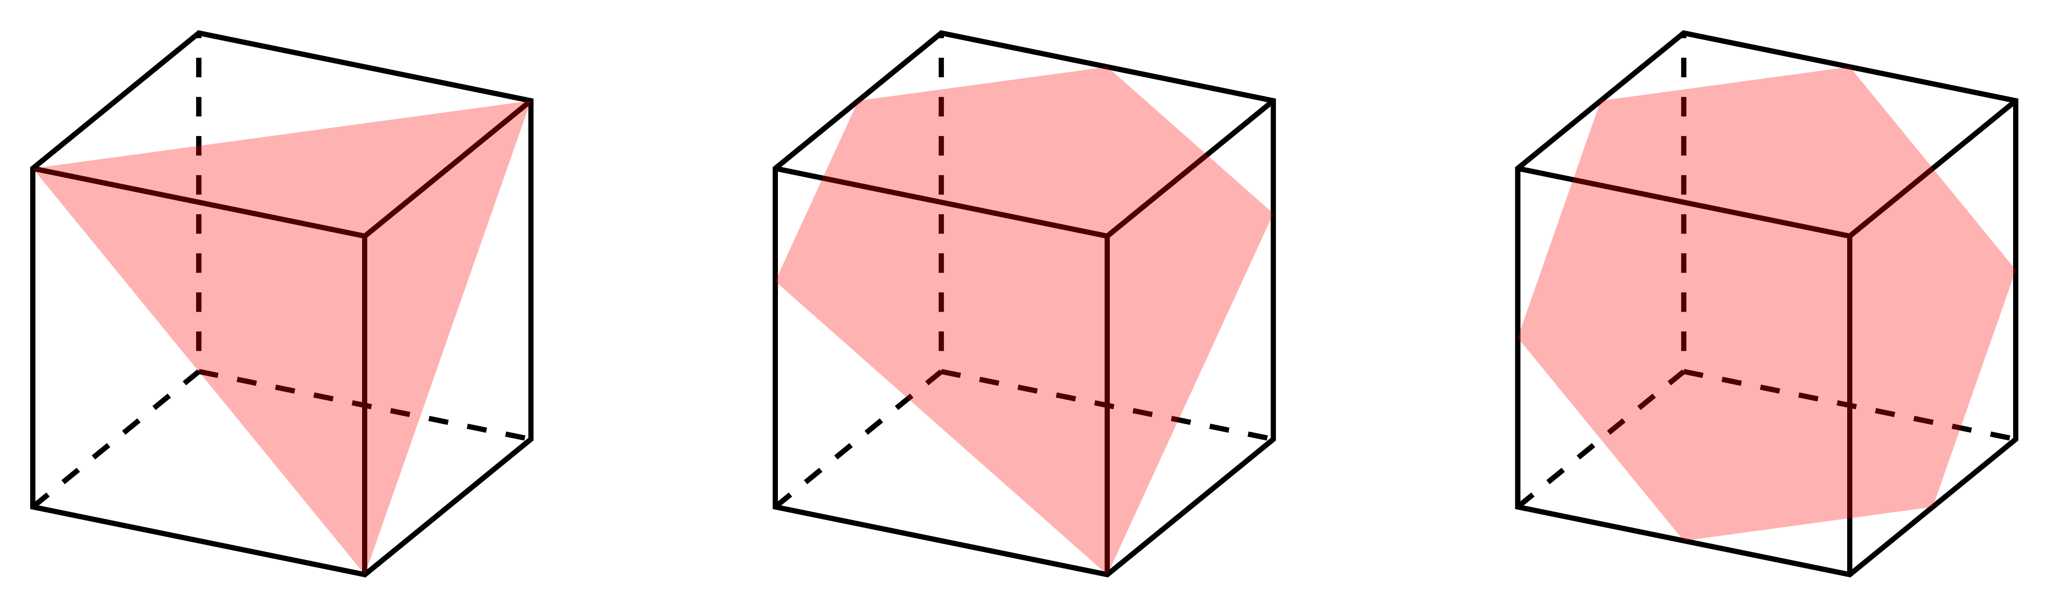 立方体の切断